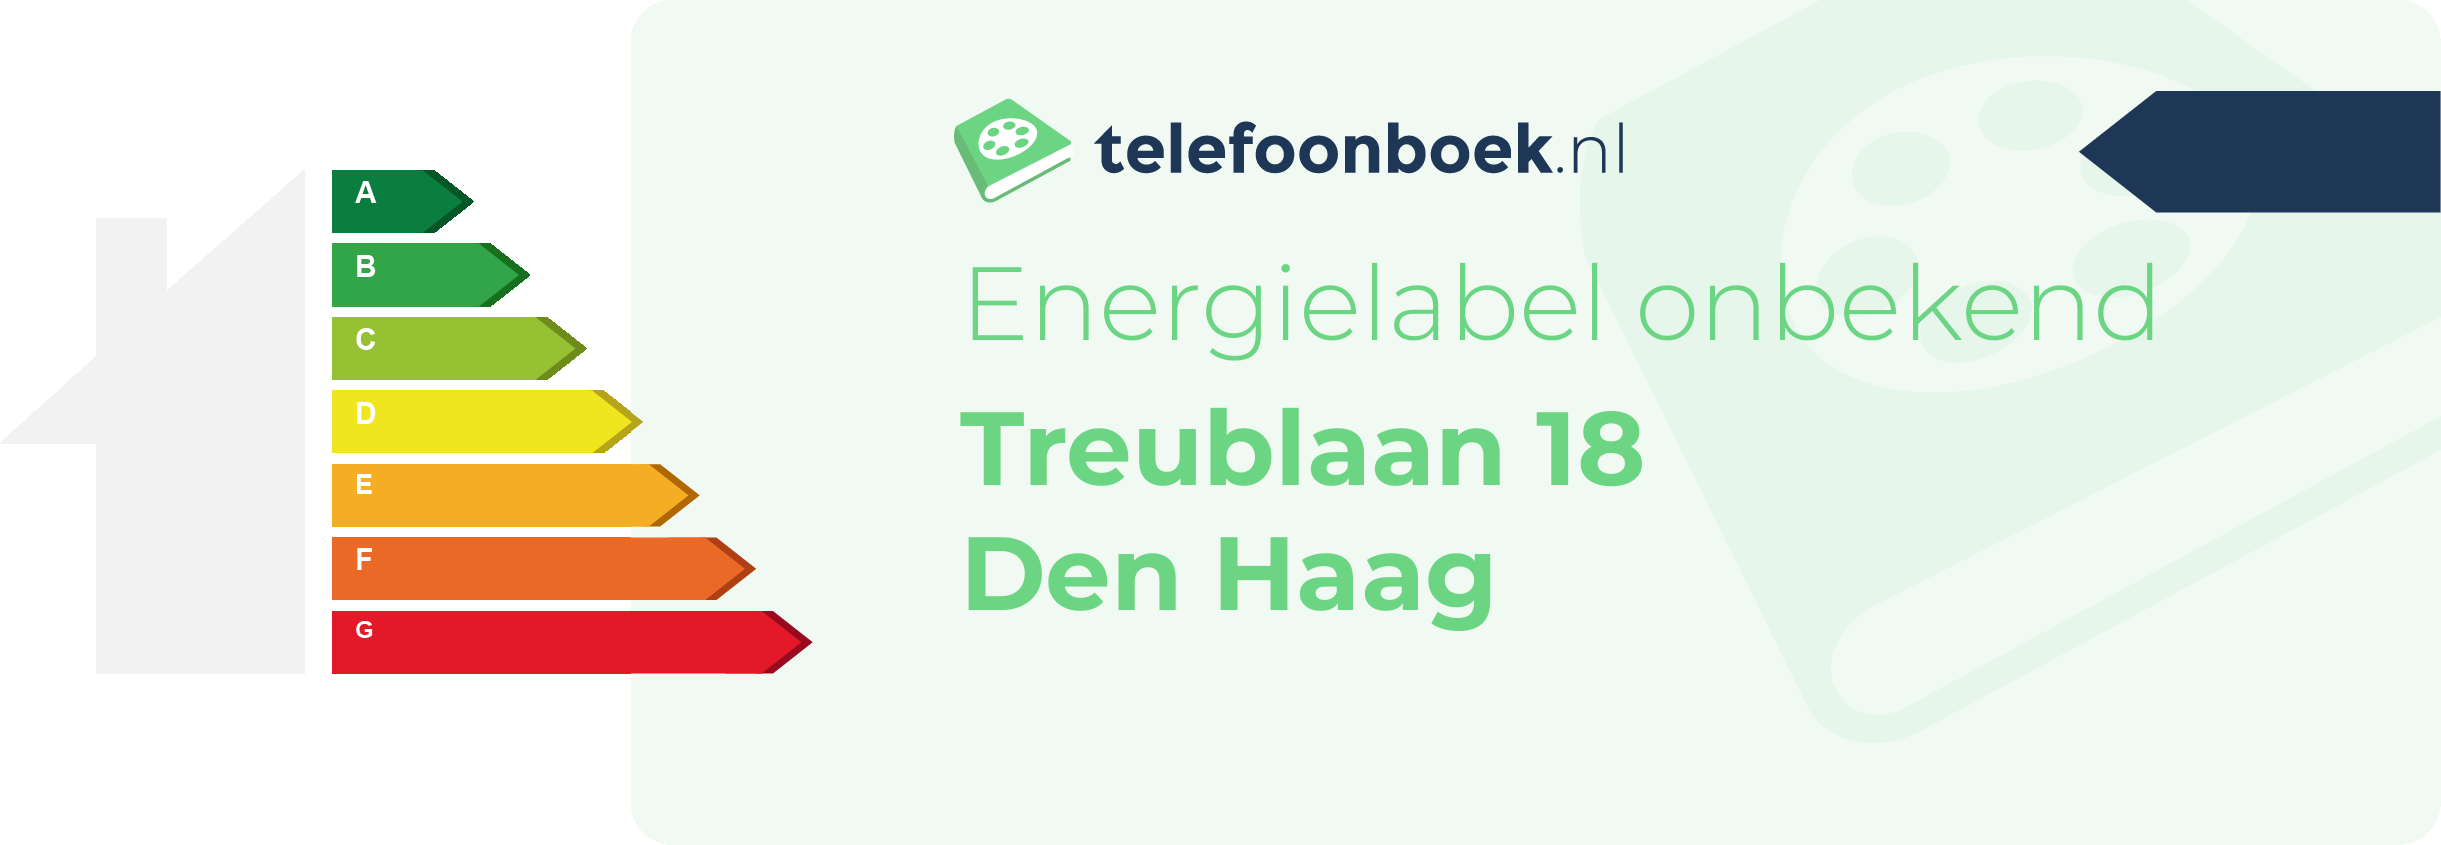 Energielabel Treublaan 18 Den Haag